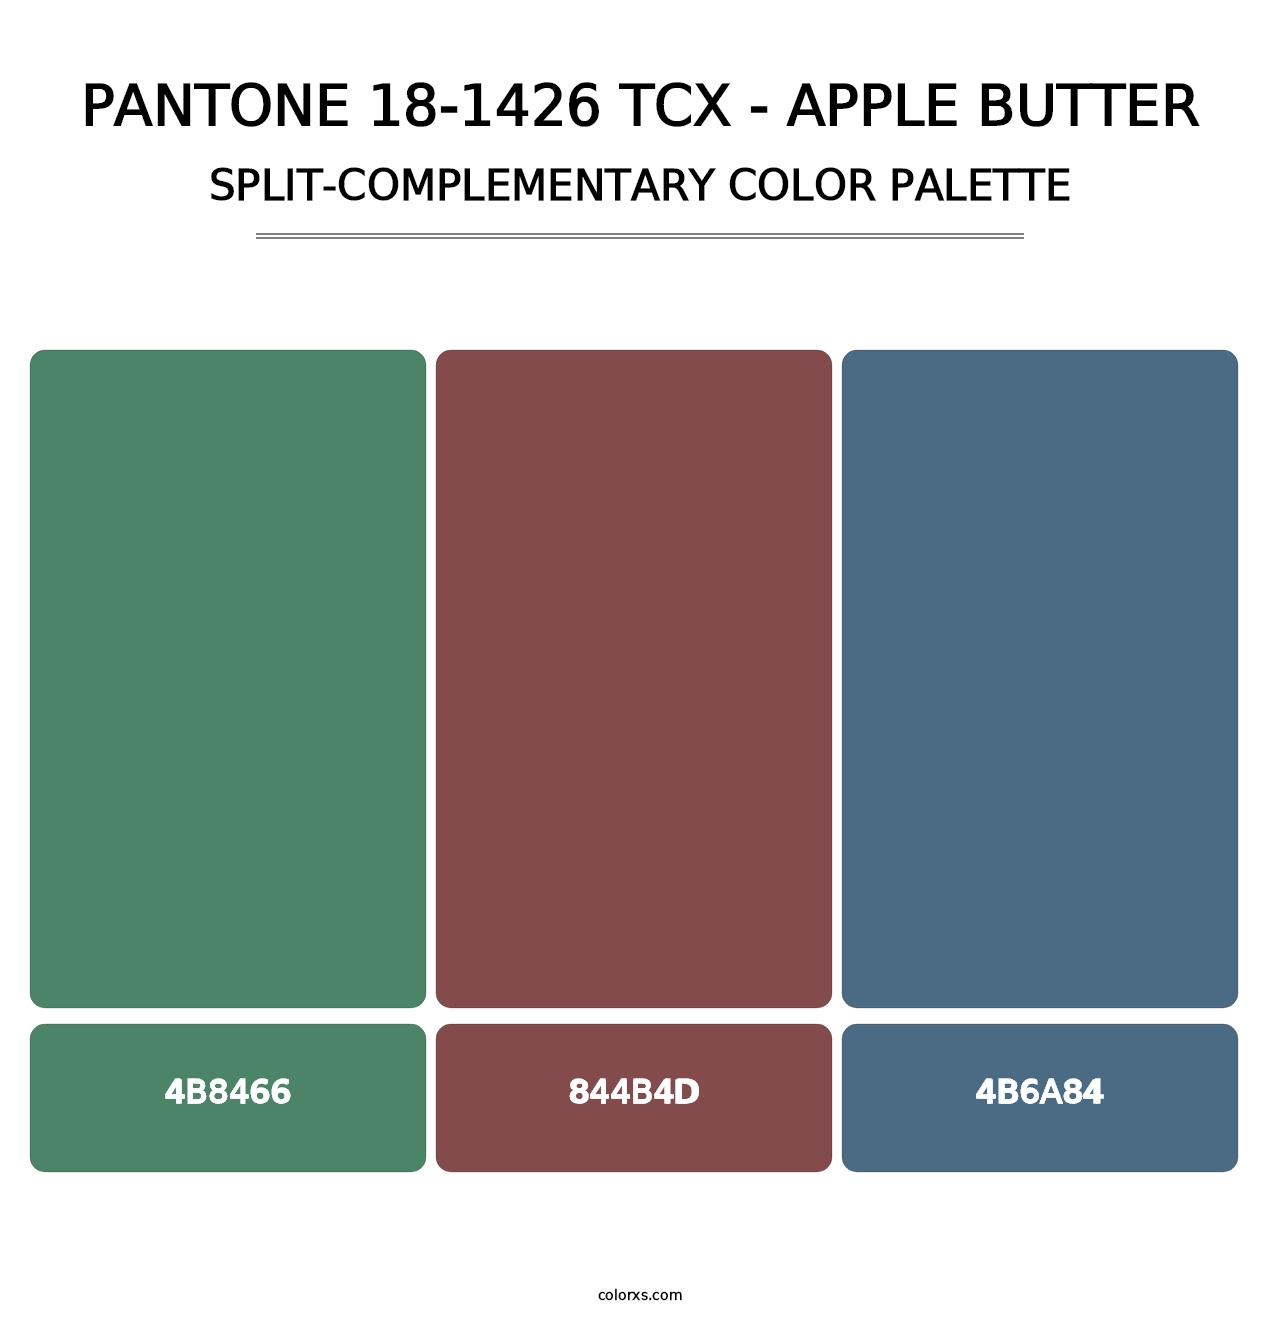 PANTONE 18-1426 TCX - Apple Butter - Split-Complementary Color Palette